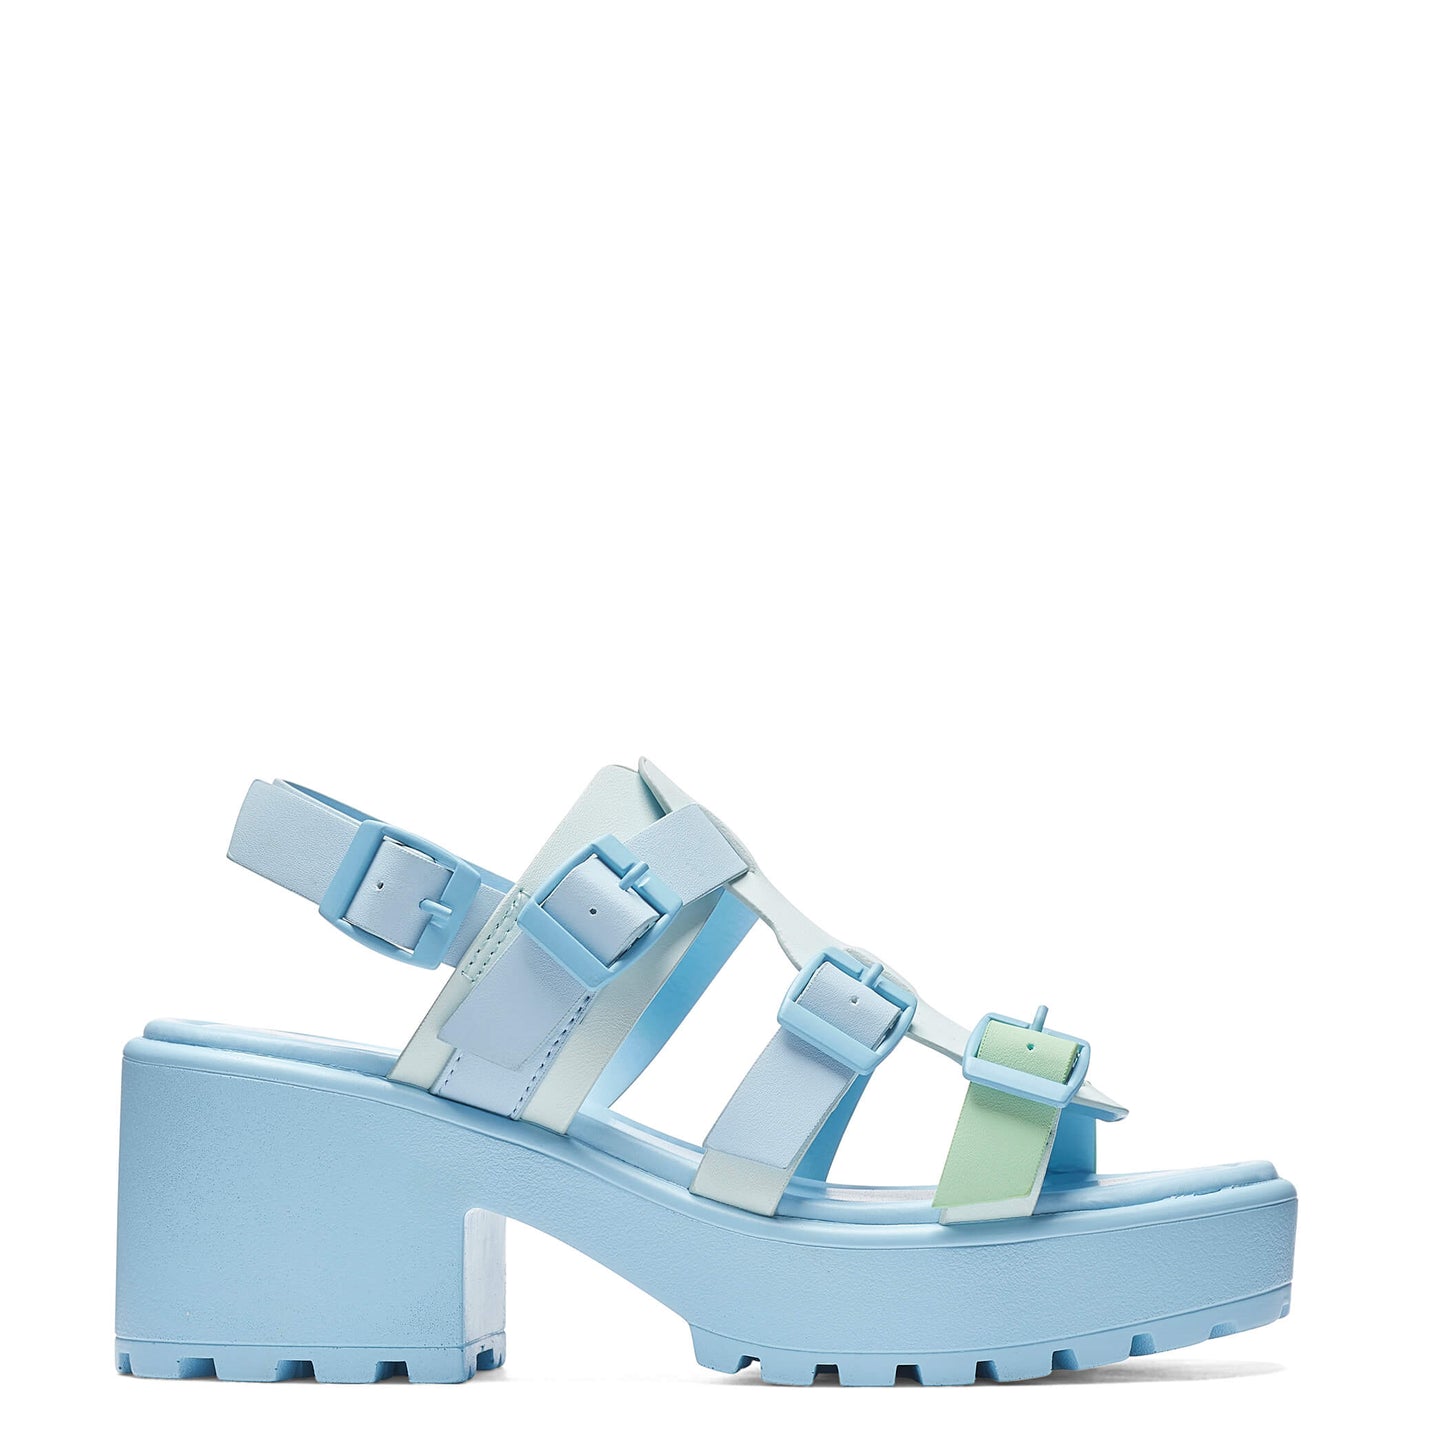 Sugar Season Chunky Buckle Sandals - Blue - Sandals - KOI Footwear - Blue - Main View